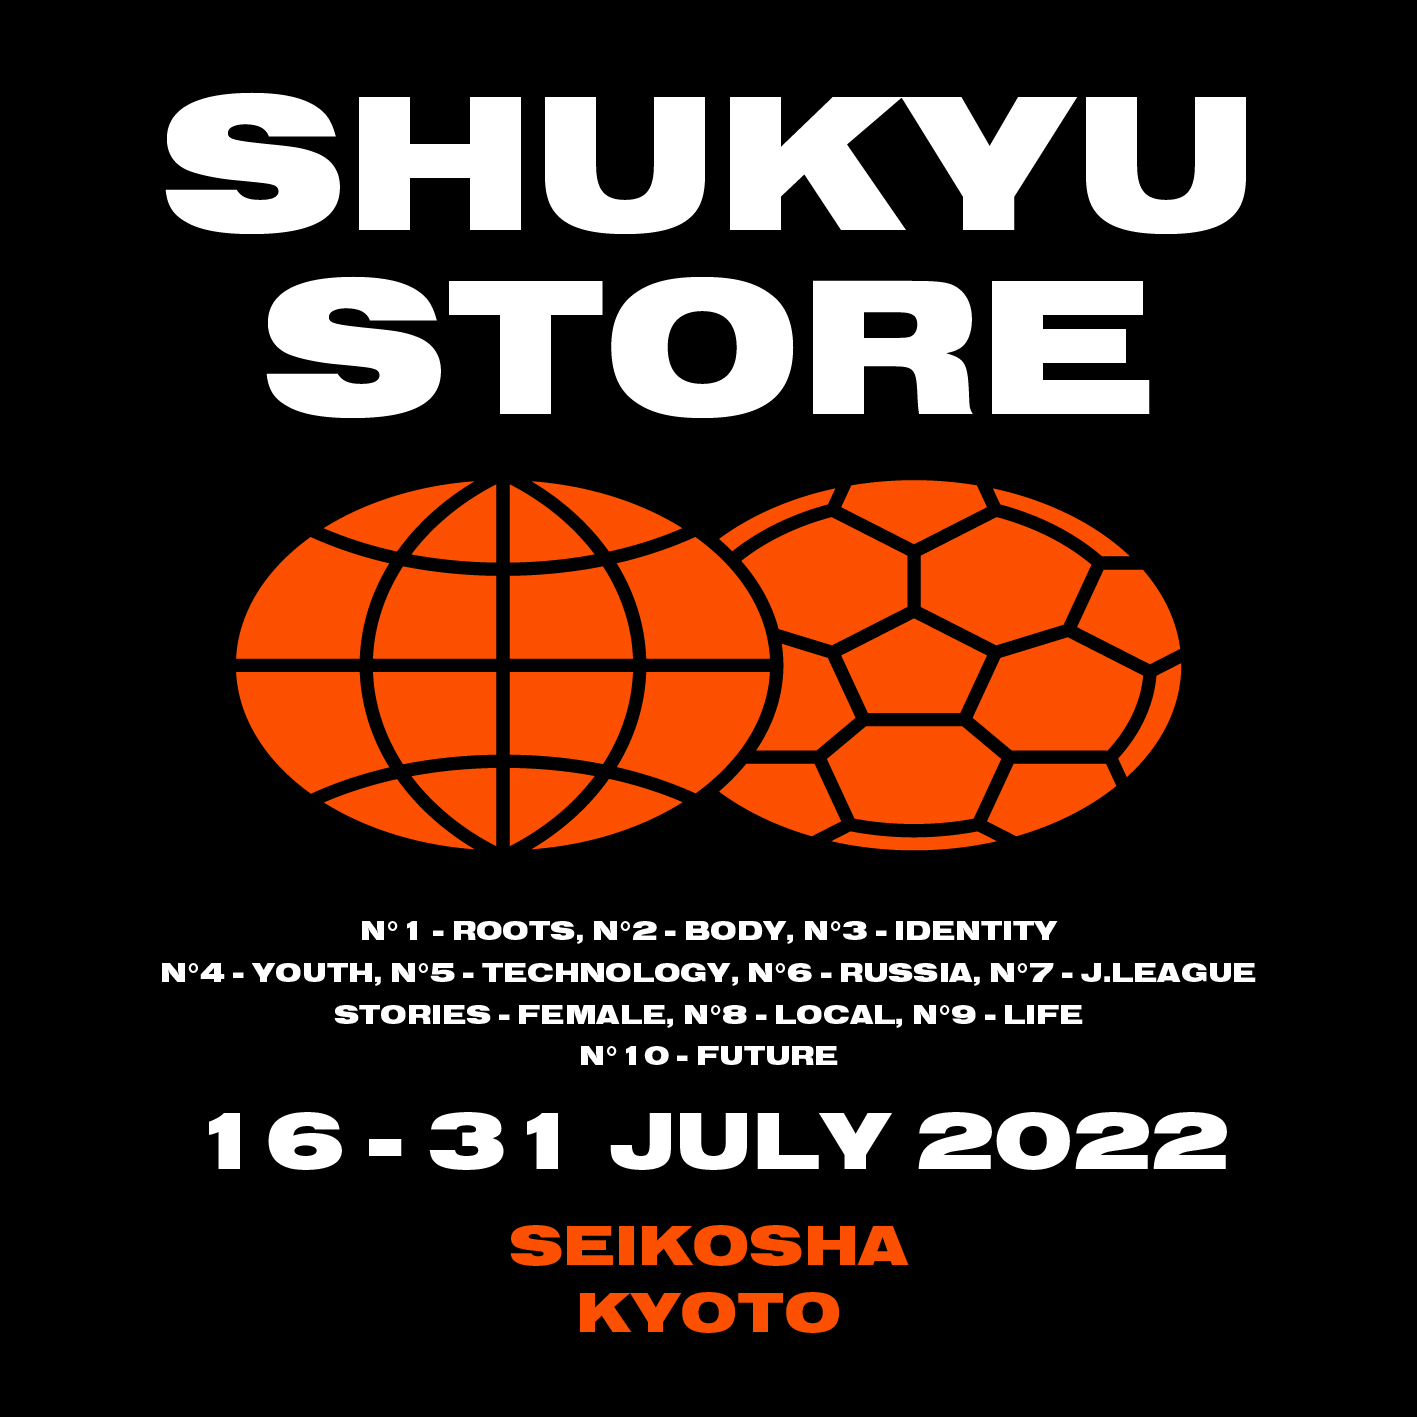 SHUKYU Store